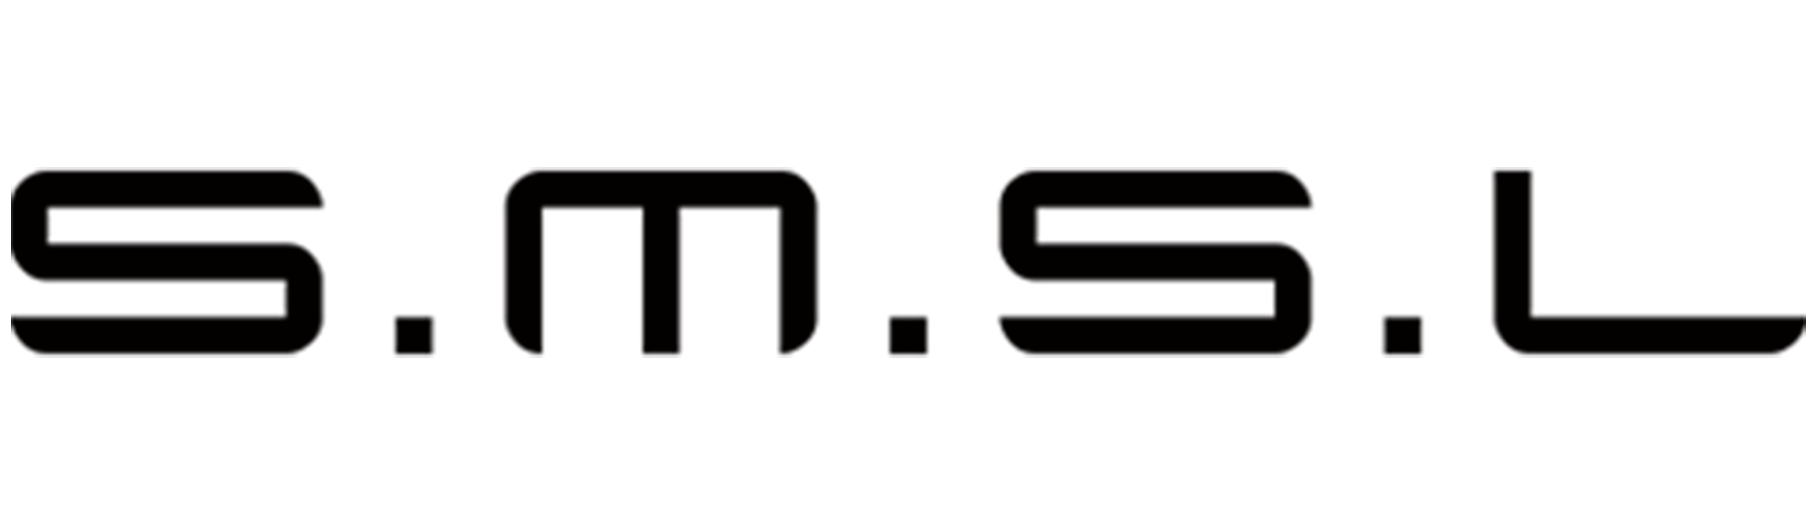 S.M.S.L logo in black